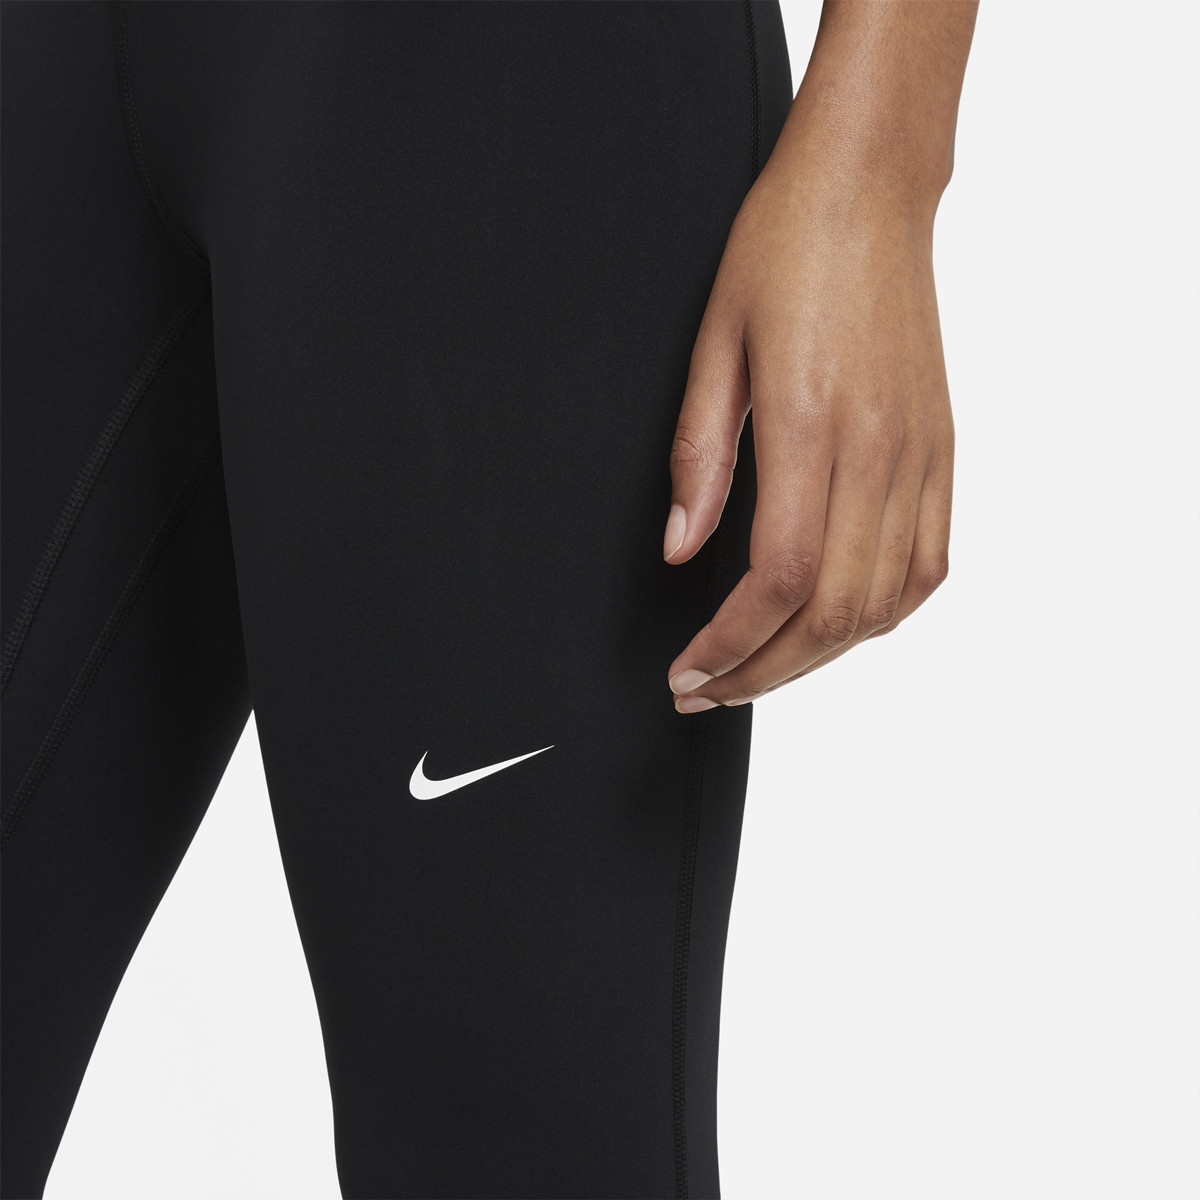 Mallas de fitness Nike Pro 365 gris Mujer